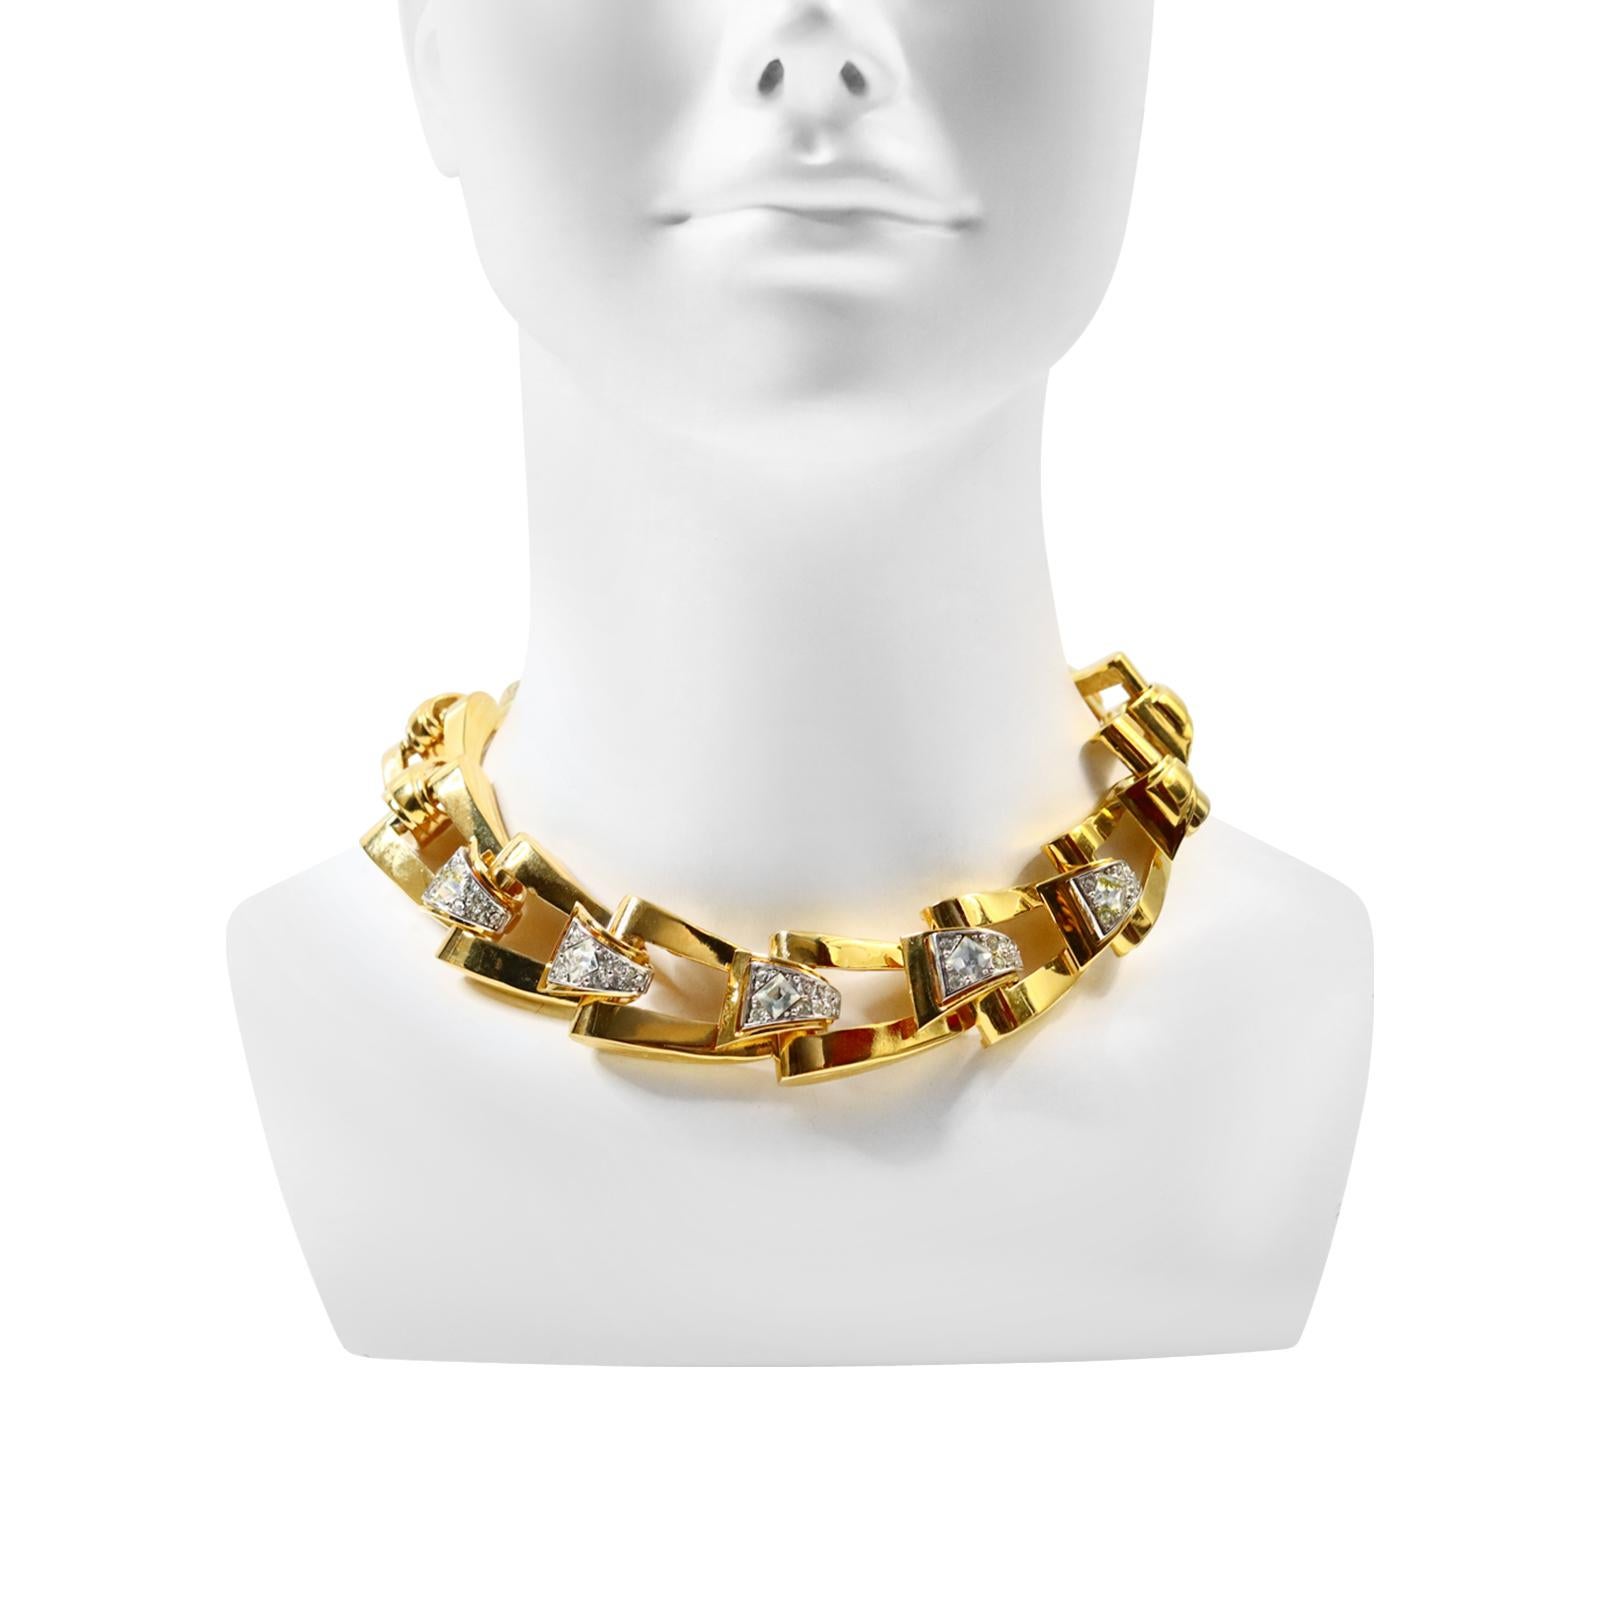 Vintage Givenchy Diamante und Gold Tone Link Halskette. Die meisten Glieder haben ein Goldstück mit Brillanten. Er ist mit einem größeren Kristall in der Mitte besetzt. Eine schwere und umfangreiche Halskette. Es gibt ein Armband vor Ort zu